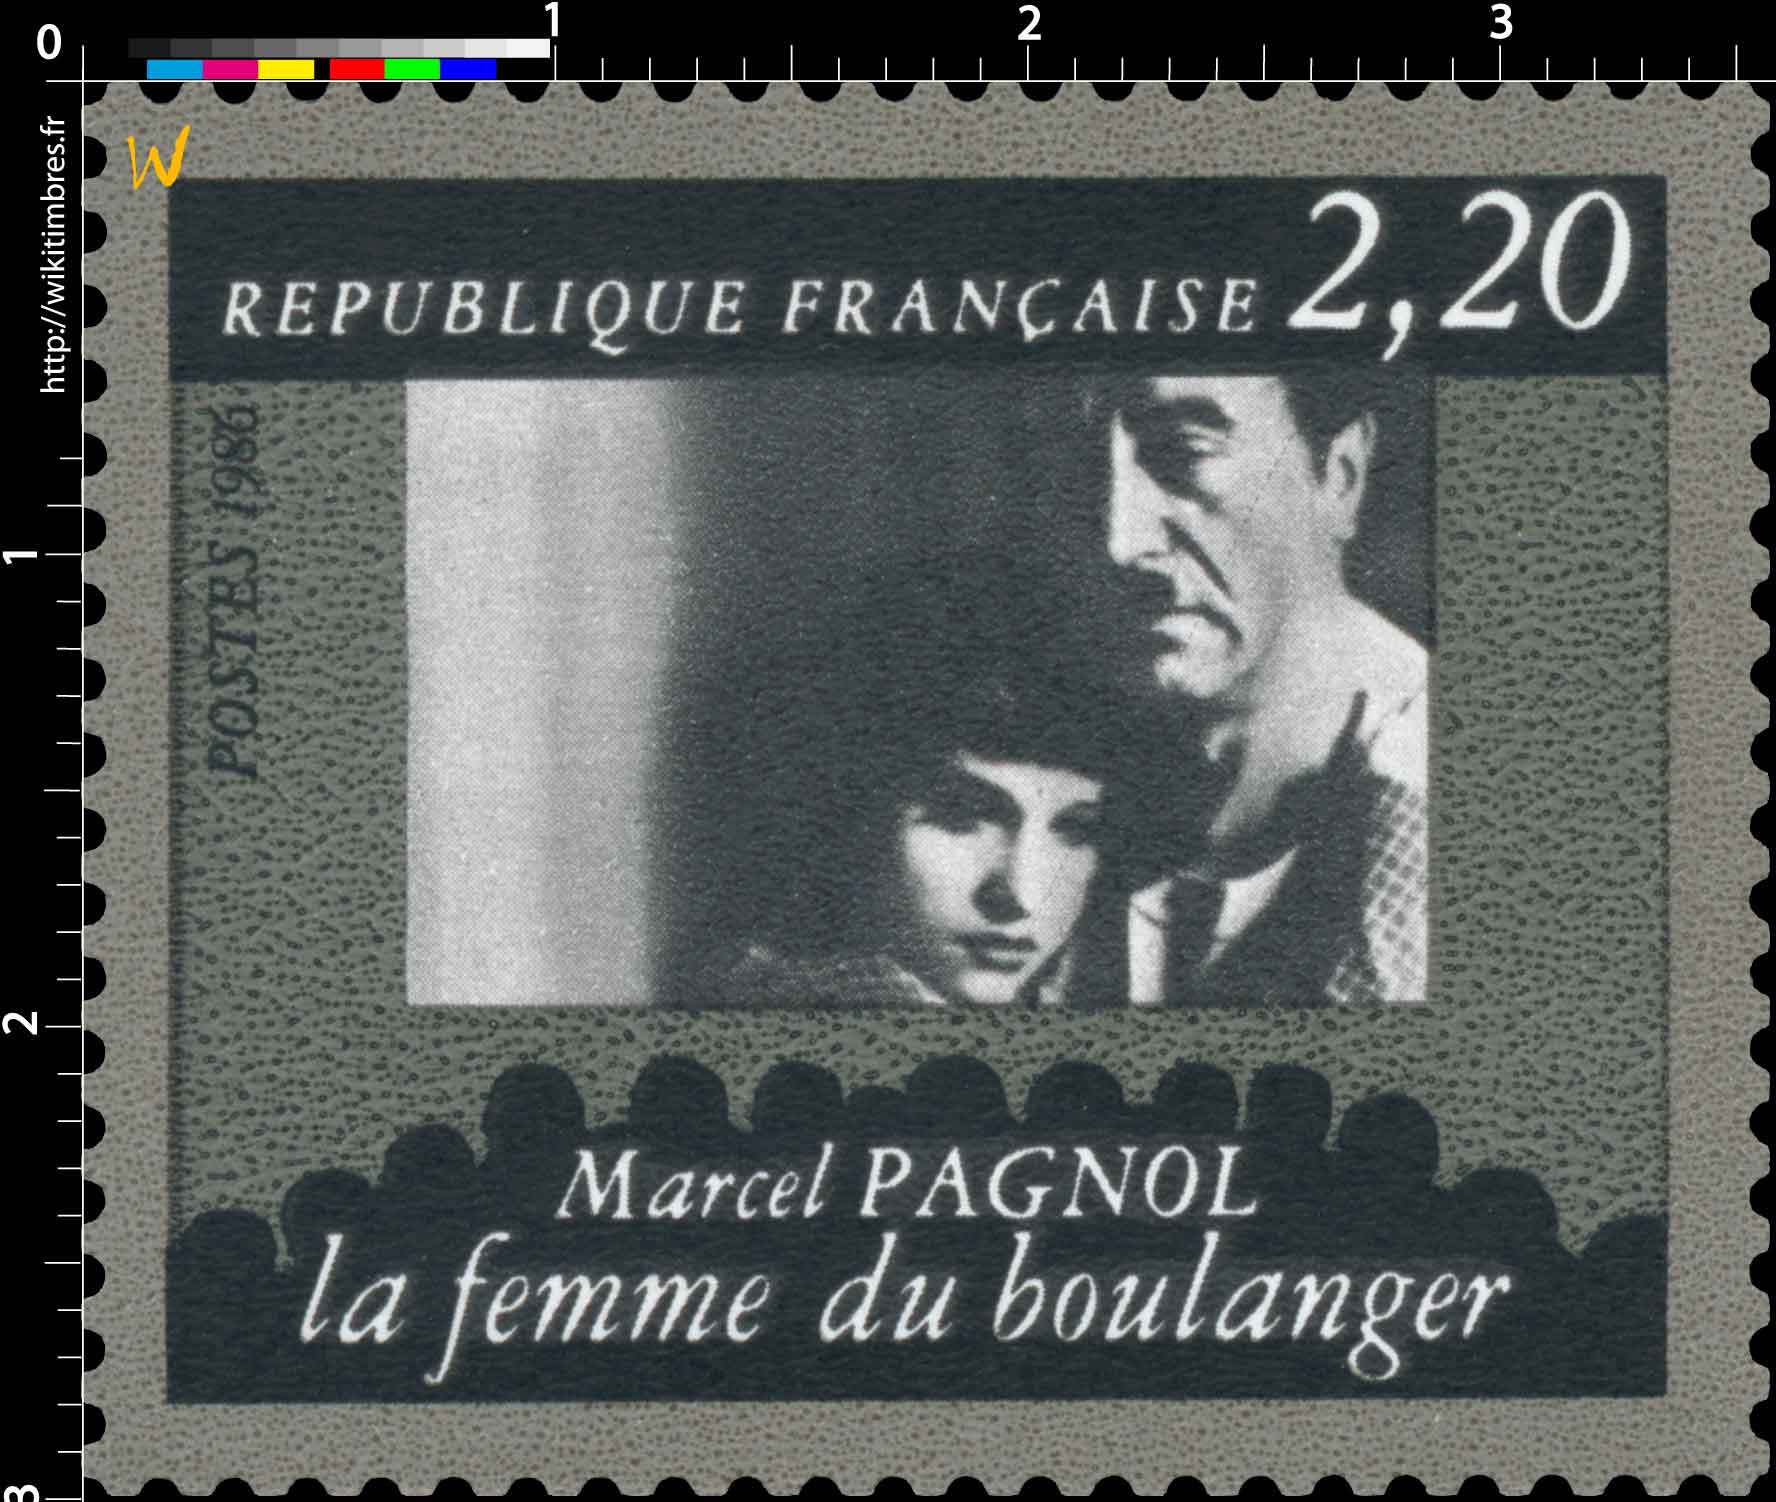 1986 Marcel PAGNOL la femme du boulanger